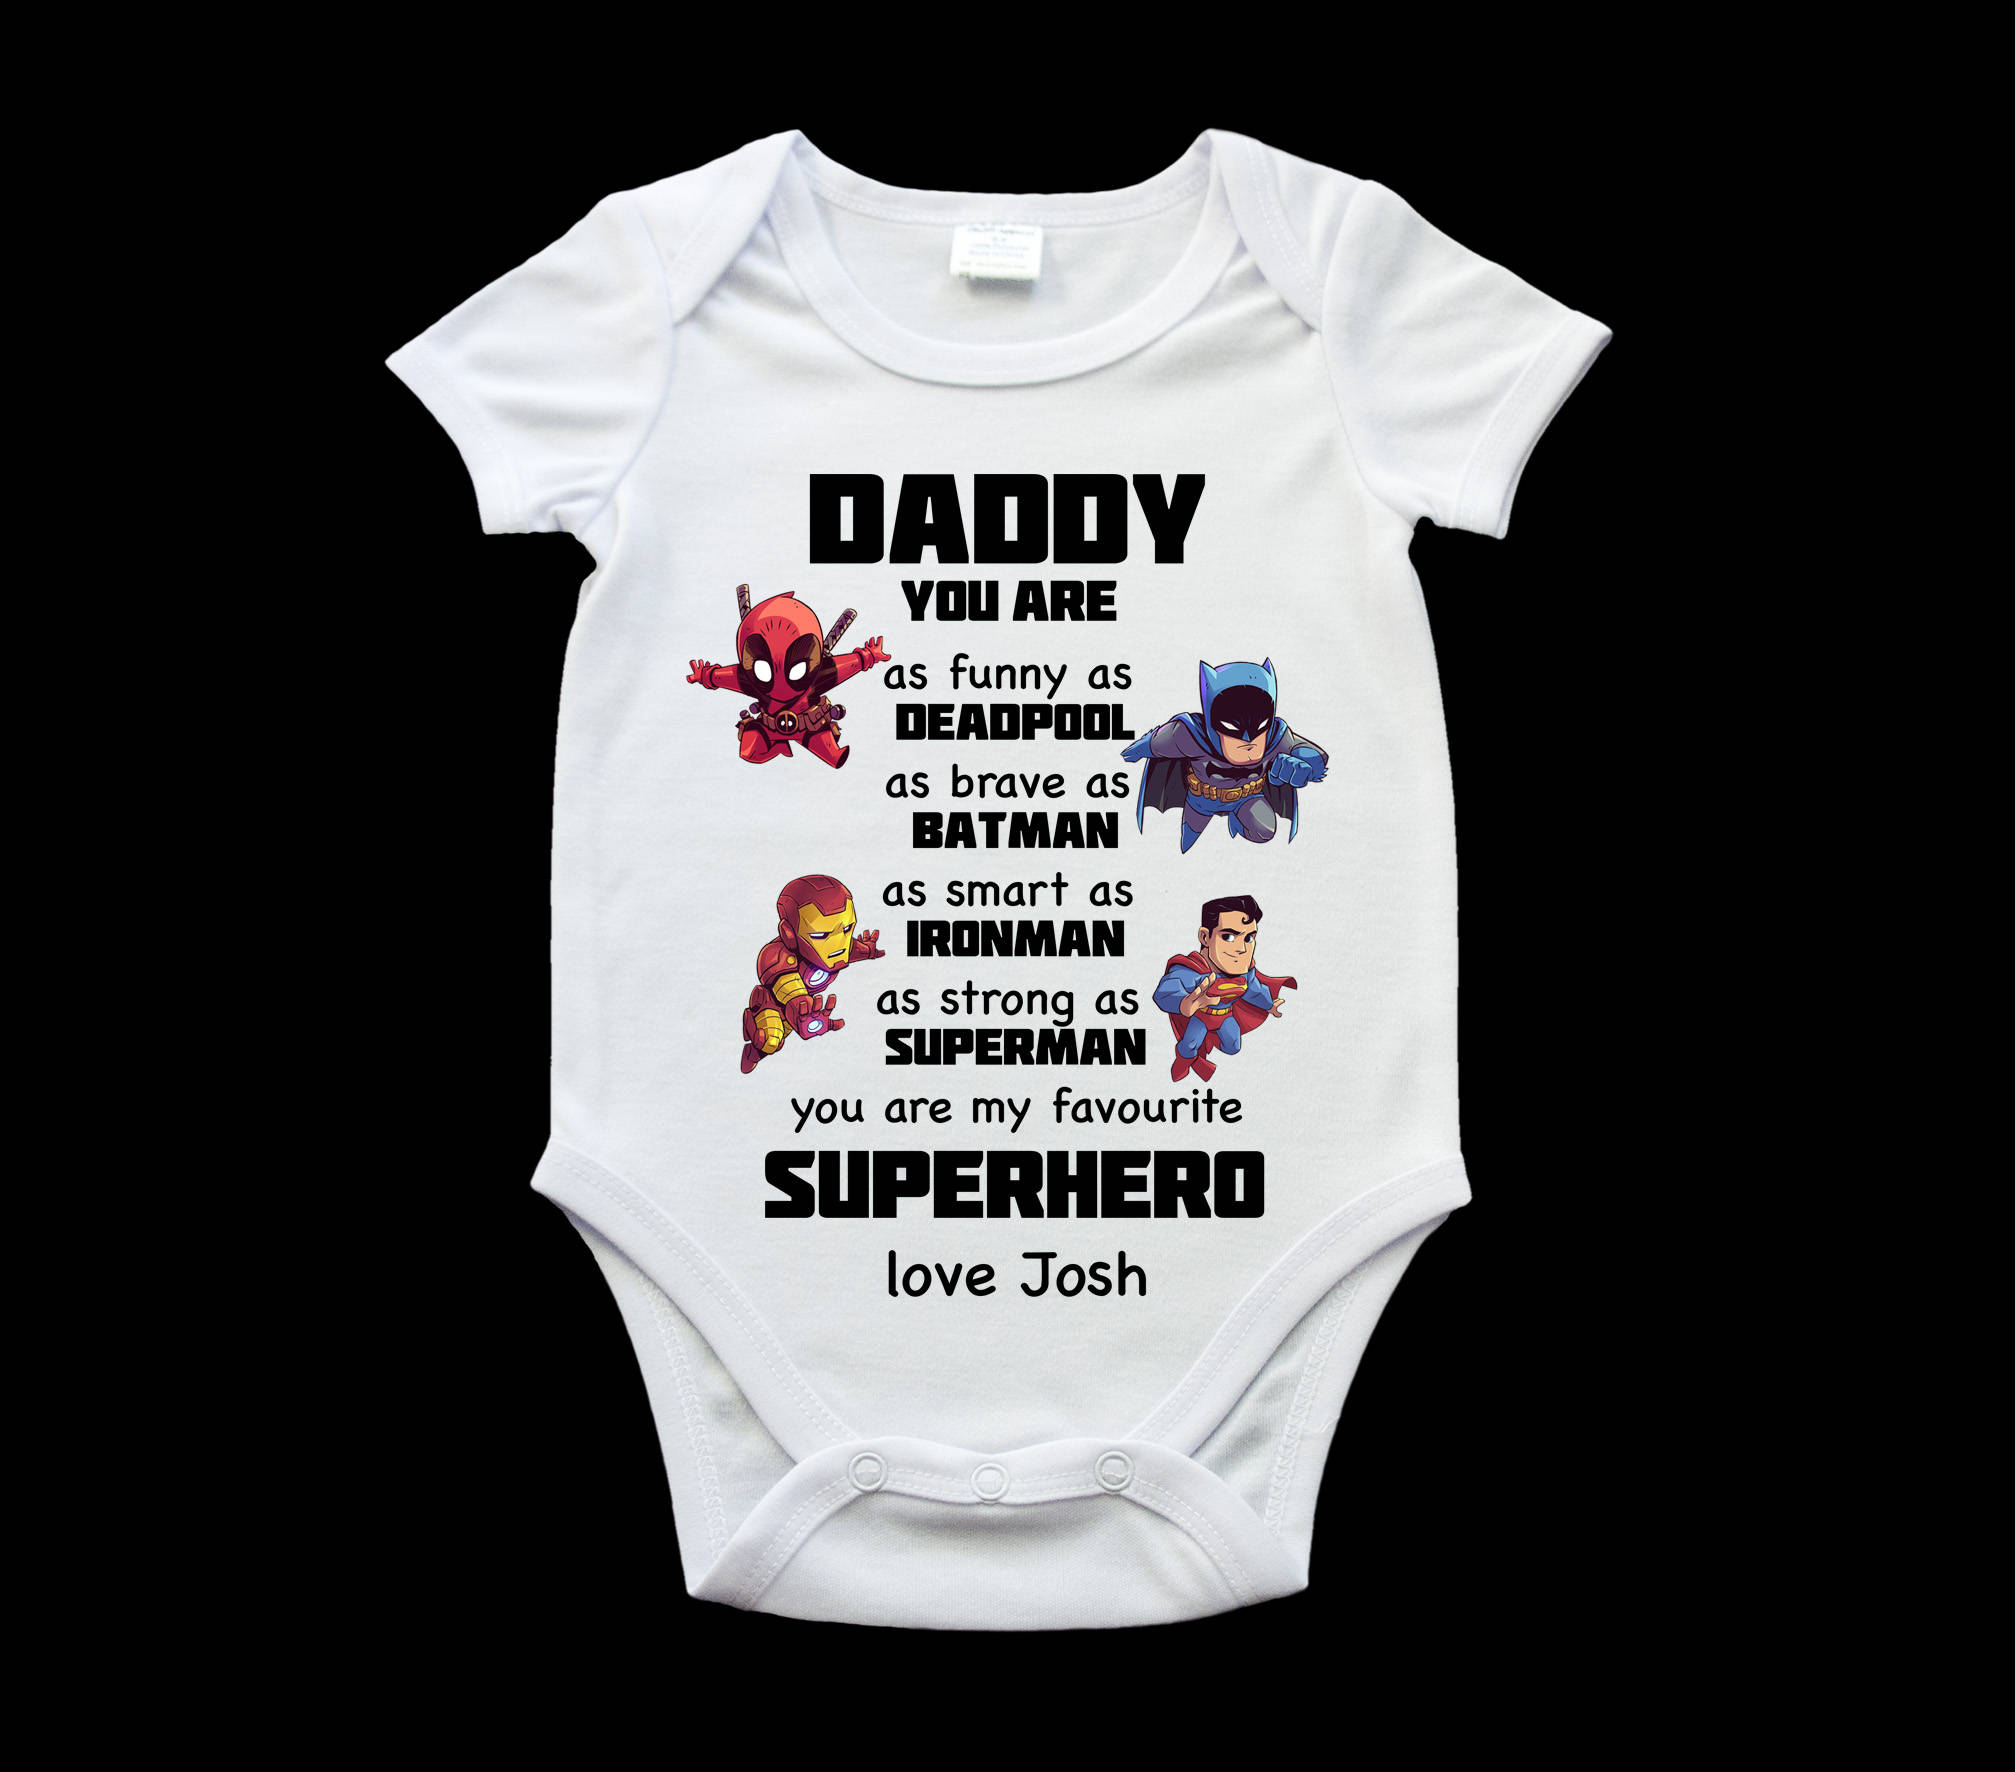 Best MARVEL Super Hero Baby Stuff 